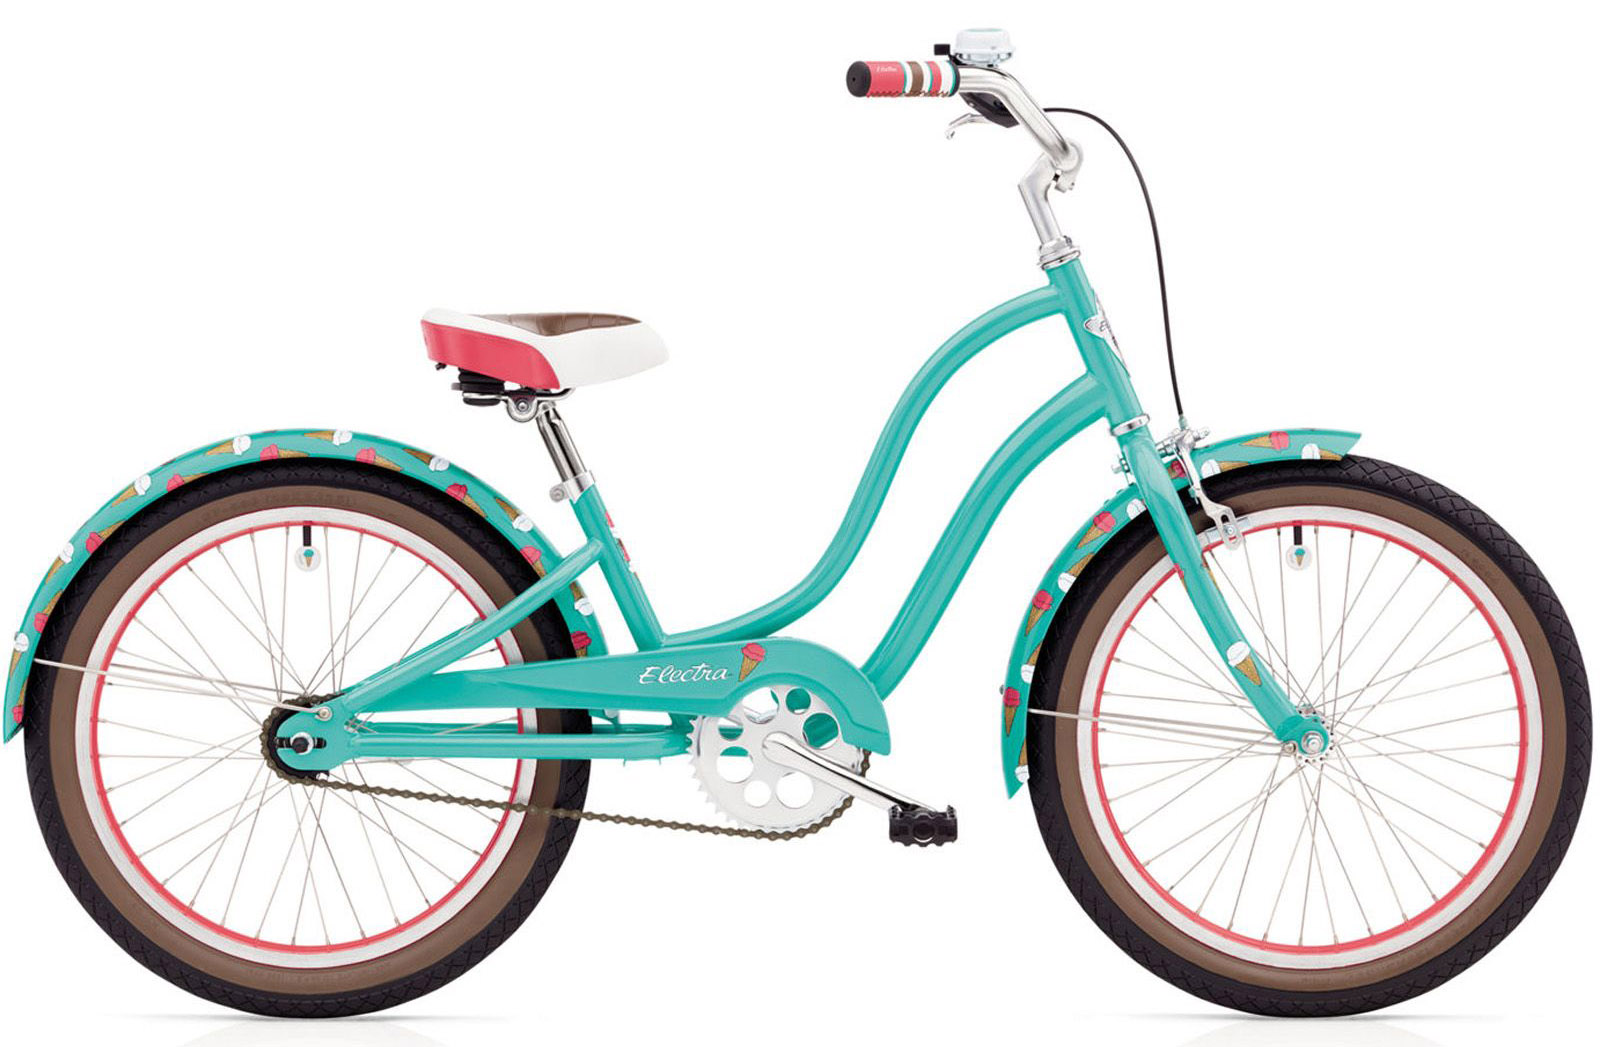  Отзывы о Детском велосипеде Electra Sweet Ride 3i 20 2021